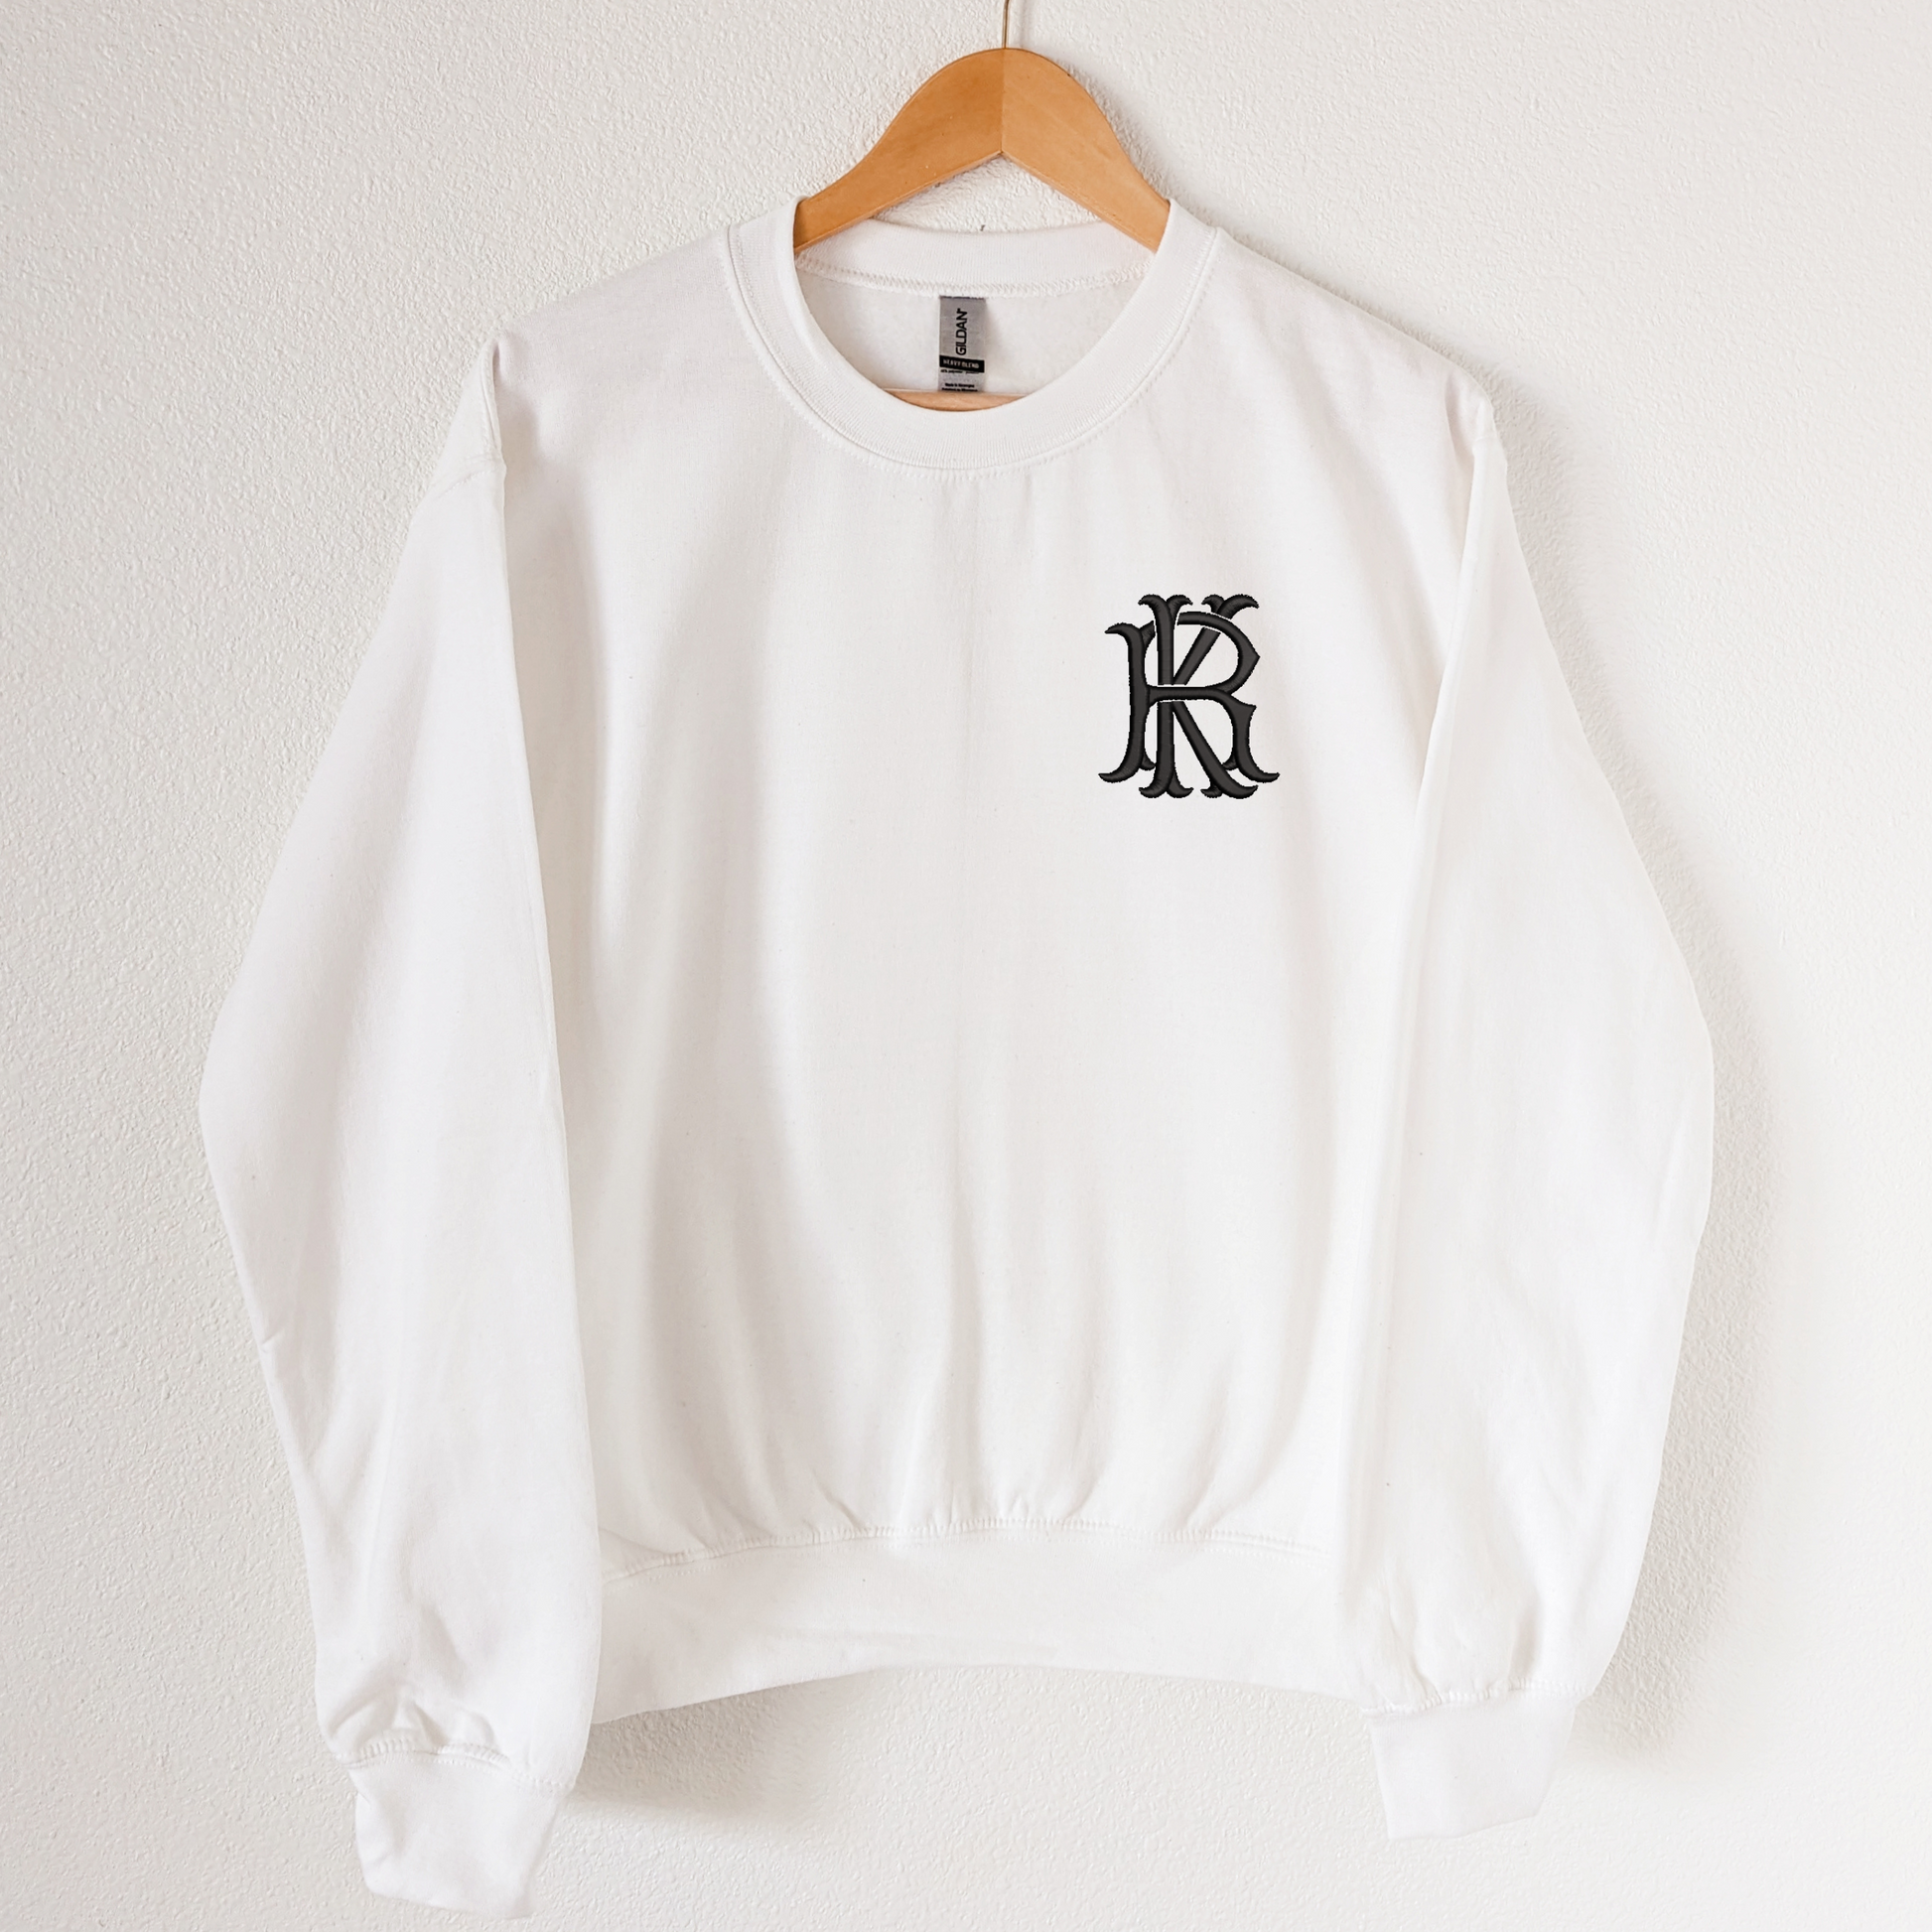 Monogram Sweatshirt, white